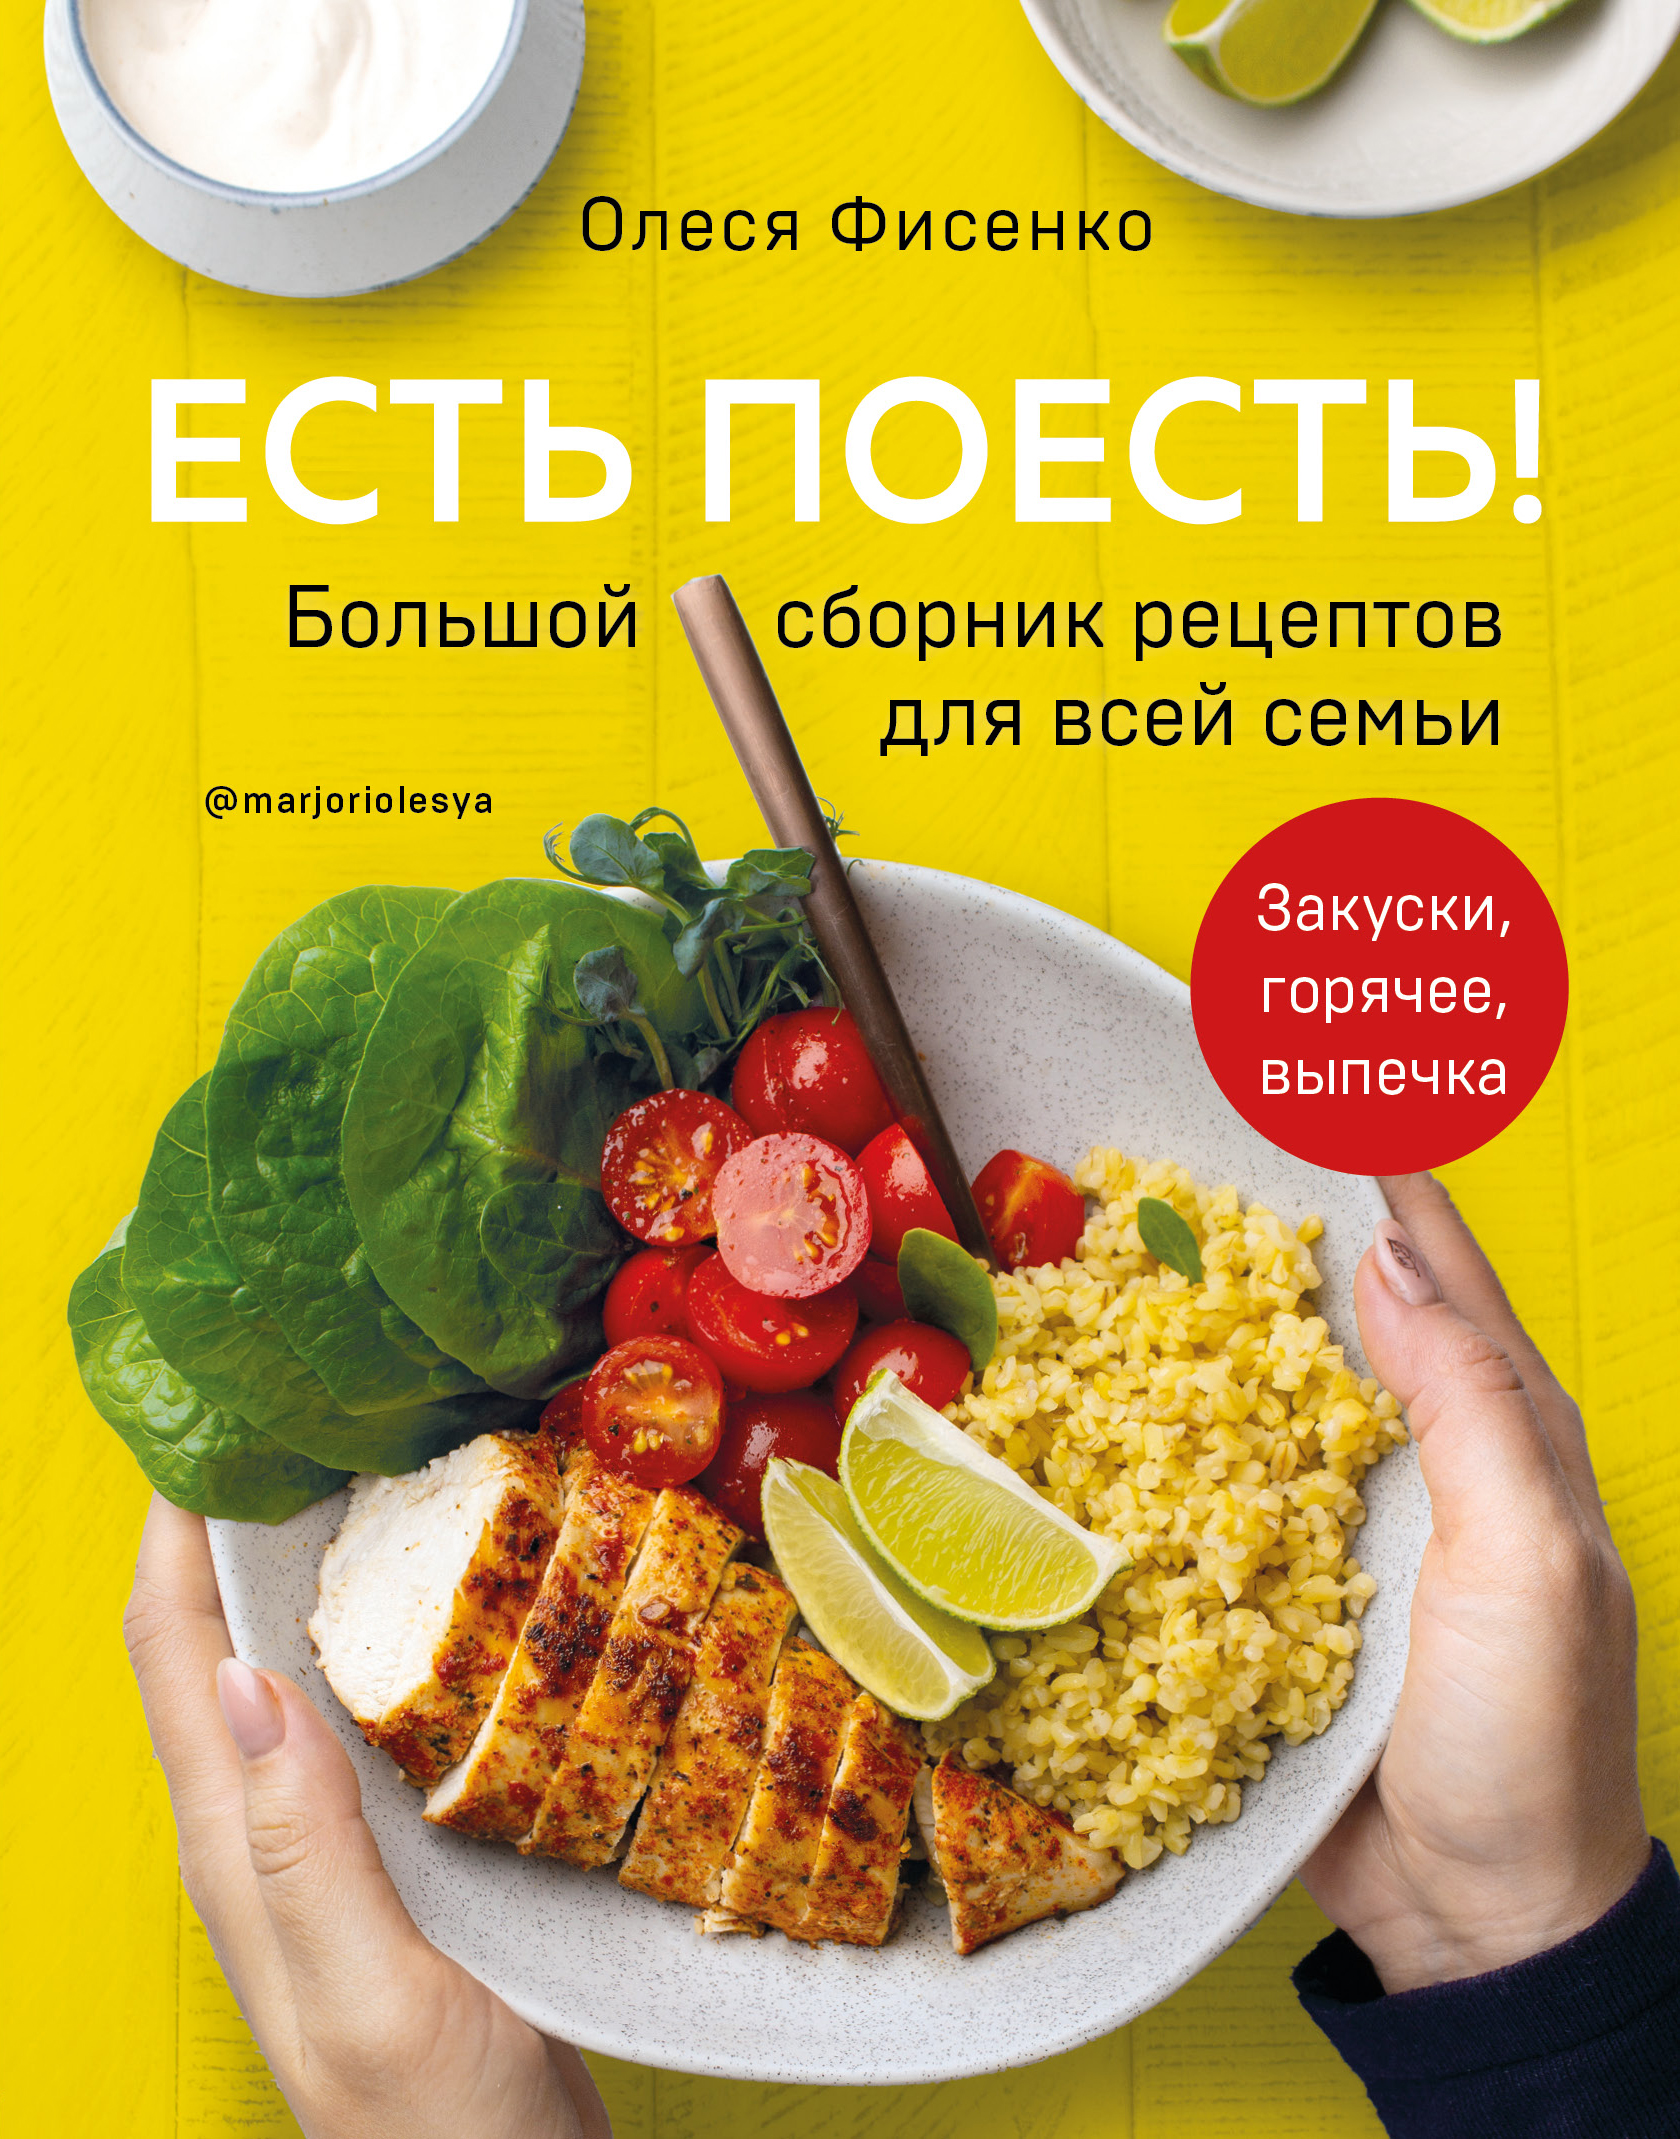 Олеся Фисенко Есть поесть! Большой сборник рецептов для всей семьи. Закуски, горячее, выпечка 